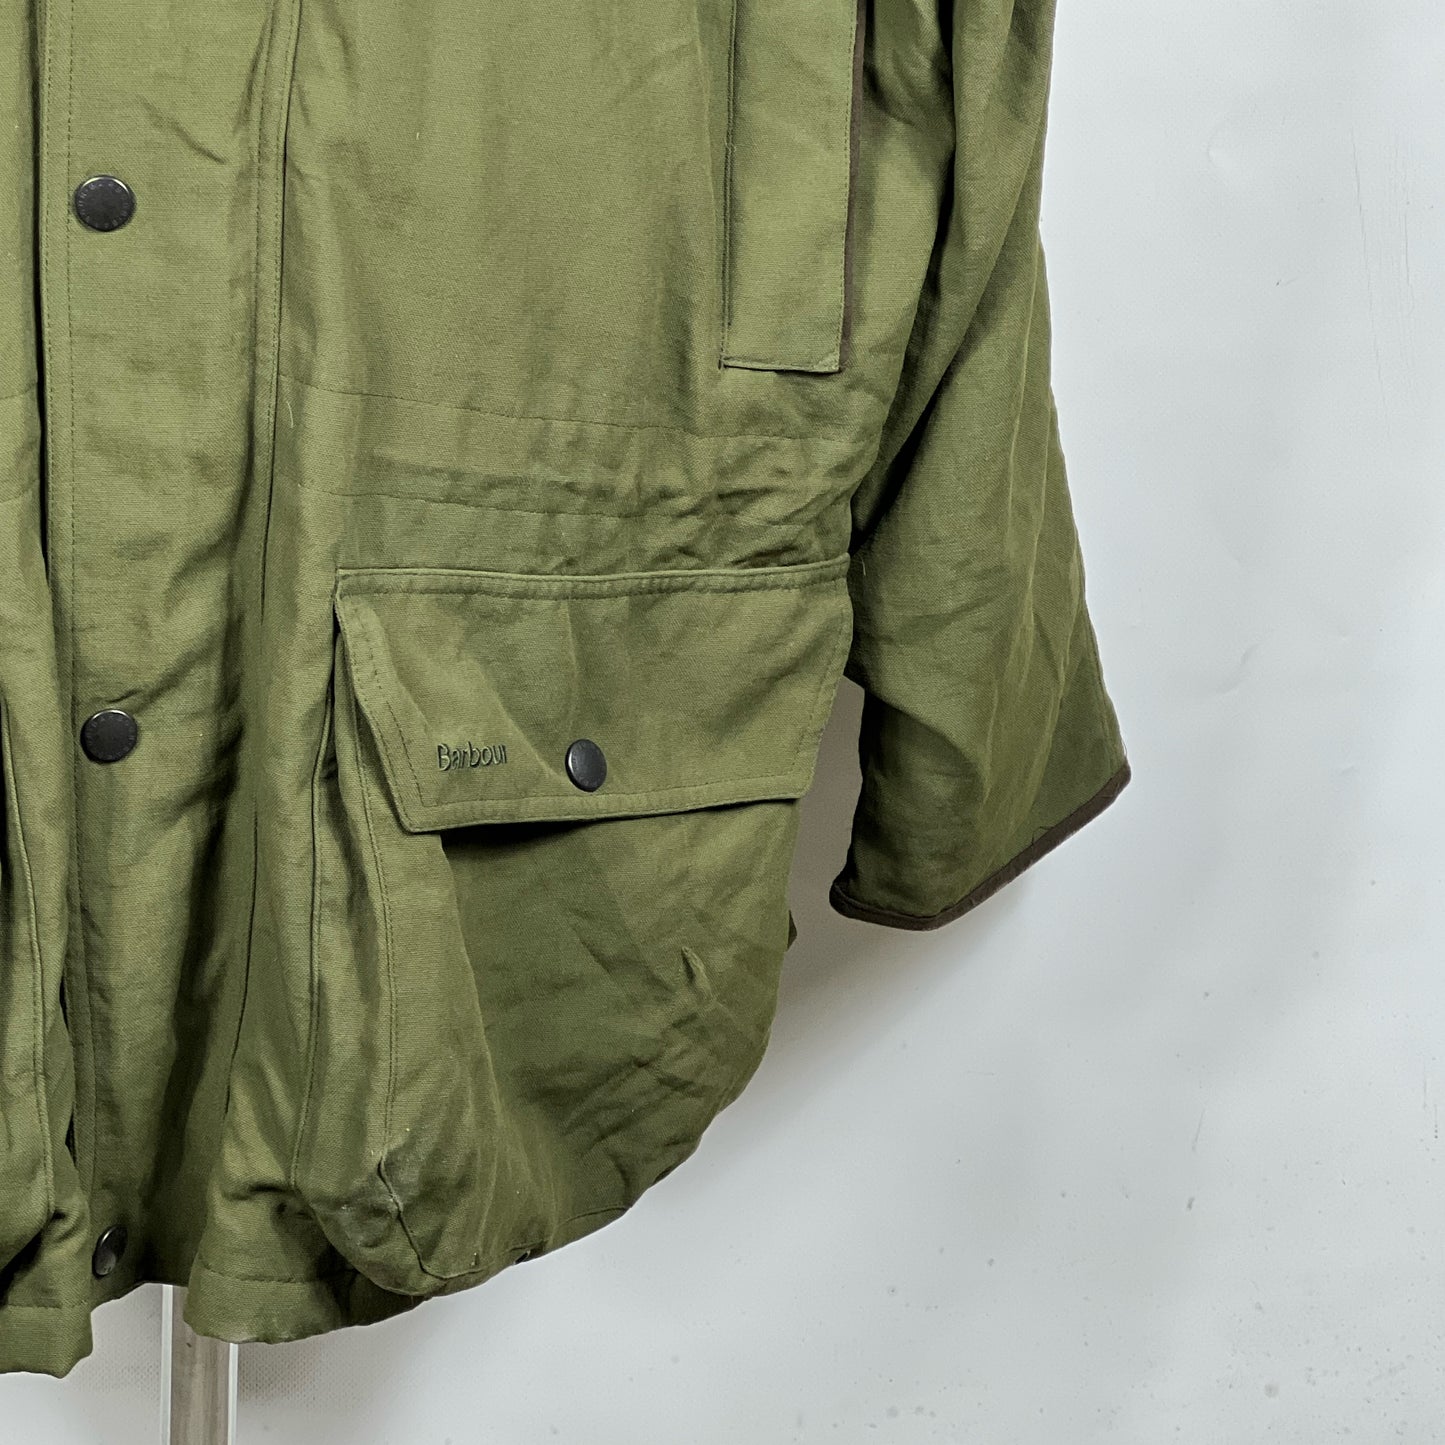 Barbour Giacca Uomo Impermeabile verde XXL Berwick Green Jacket size 2xl